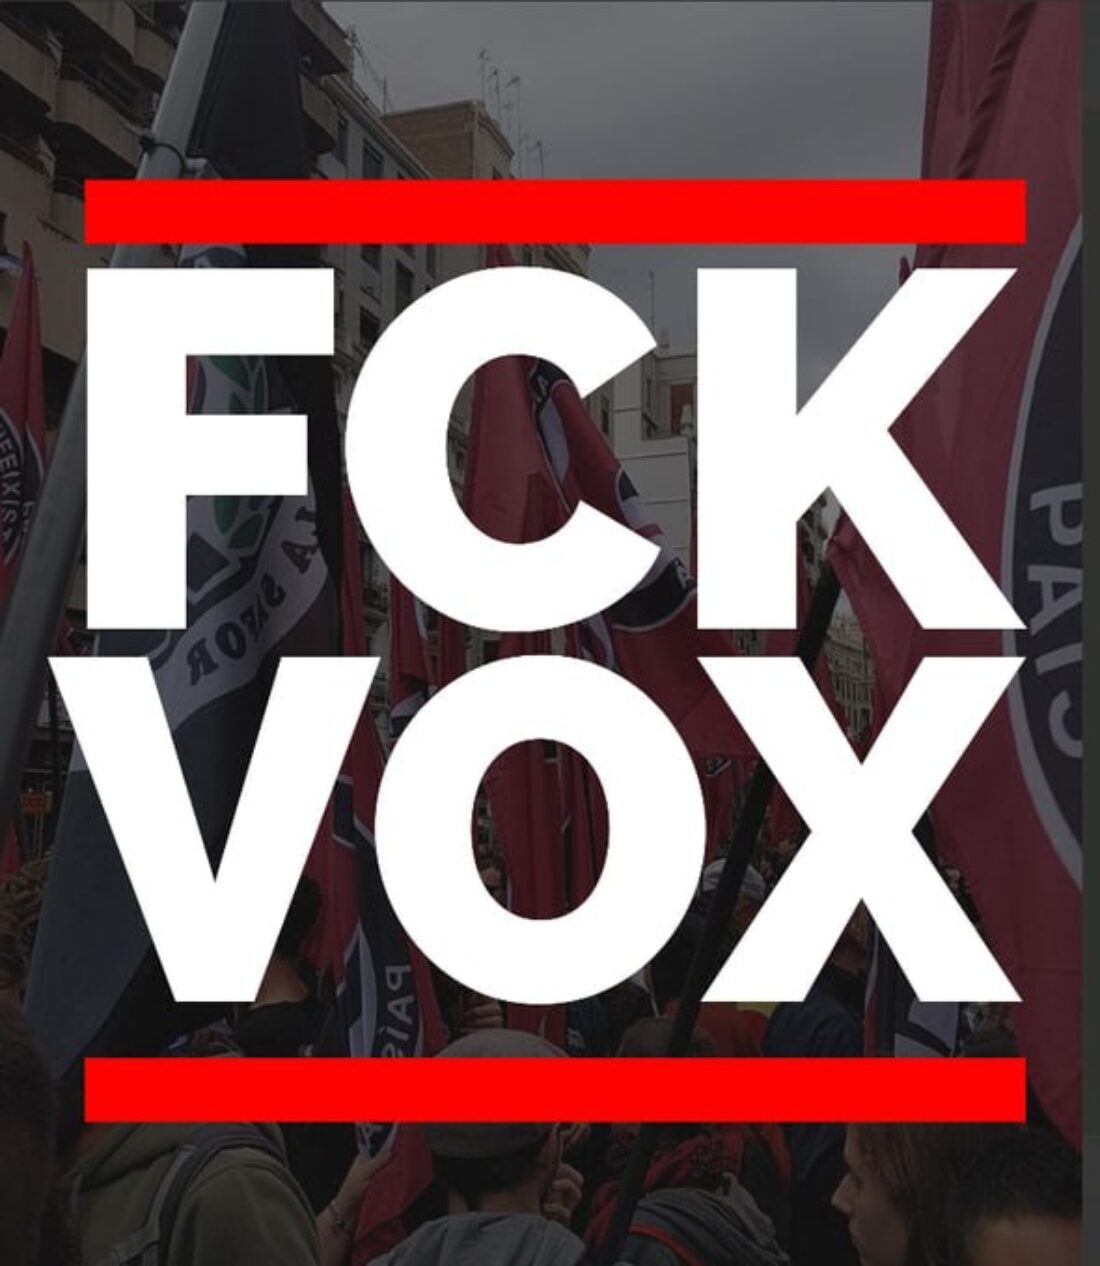 CGT muestra su rechazo a la reunión de la extrema derecha internacional, organizada por VOX para este domingo en Madrid